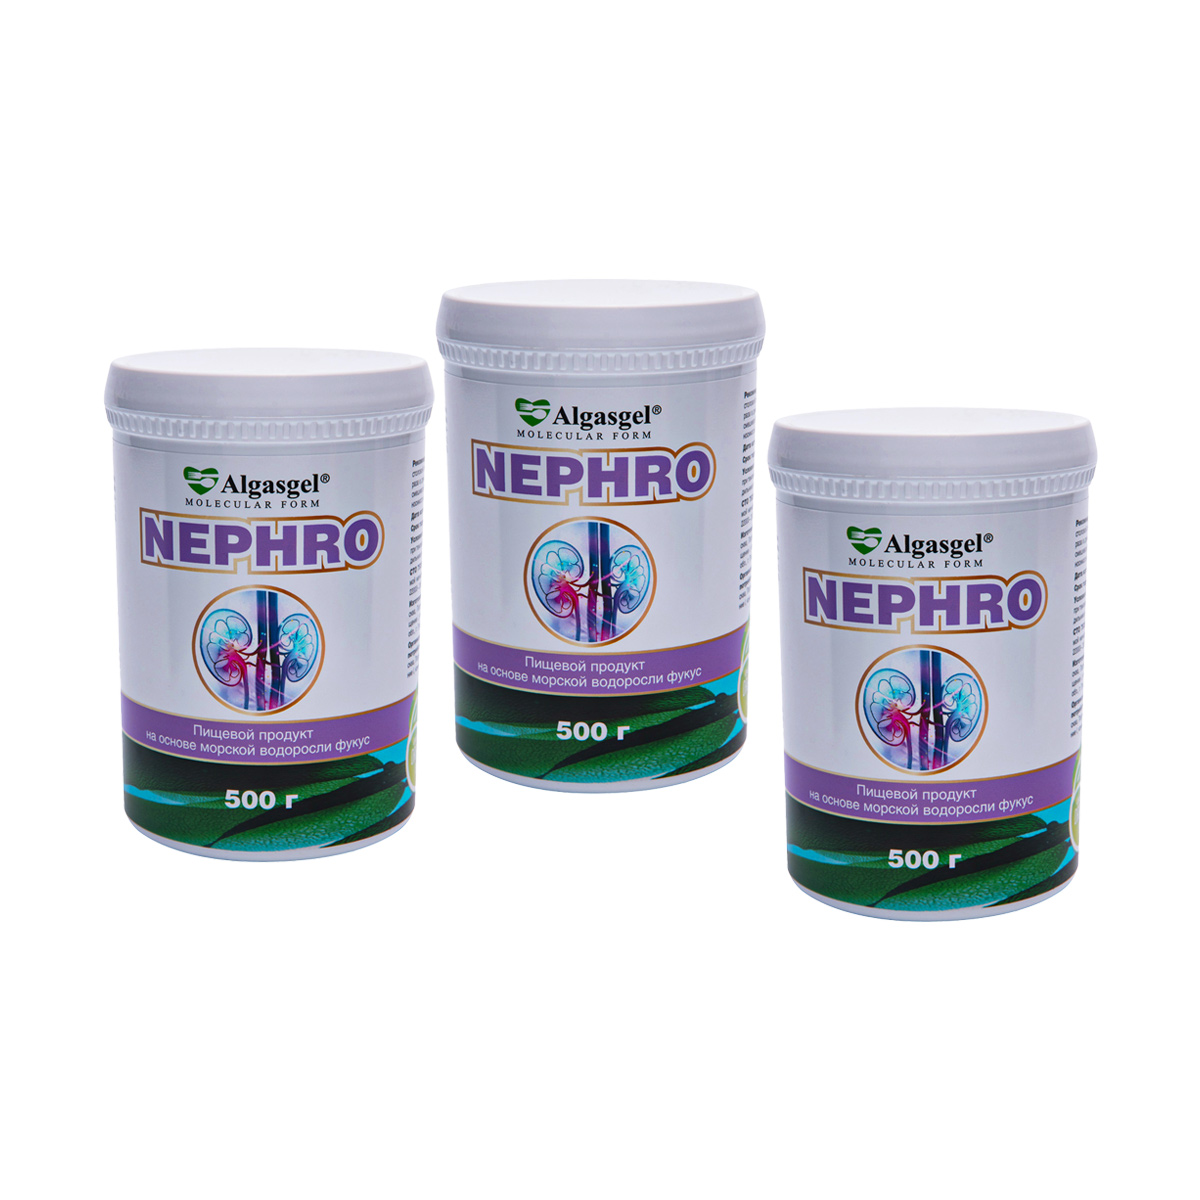 Algasgel Nephro для комплексного оздоровления почек и мочевыделительной системы (2 уп. по 500 г + 1 в подарок), БАДы, БАДы для почек